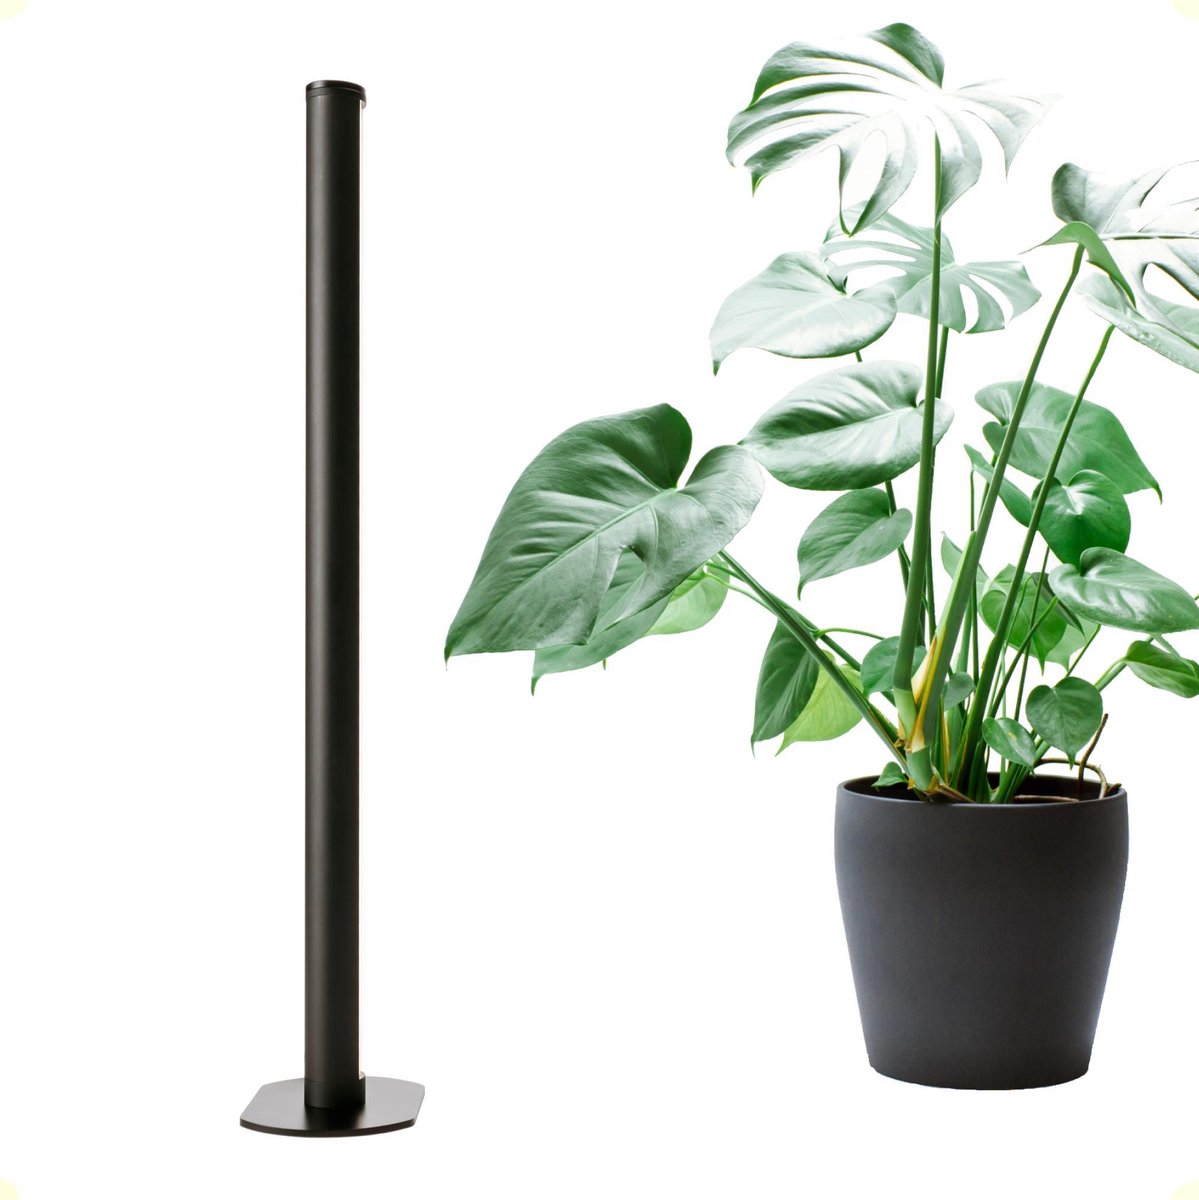 Groeilamp kopen: zo kies beste lamp voor je planten